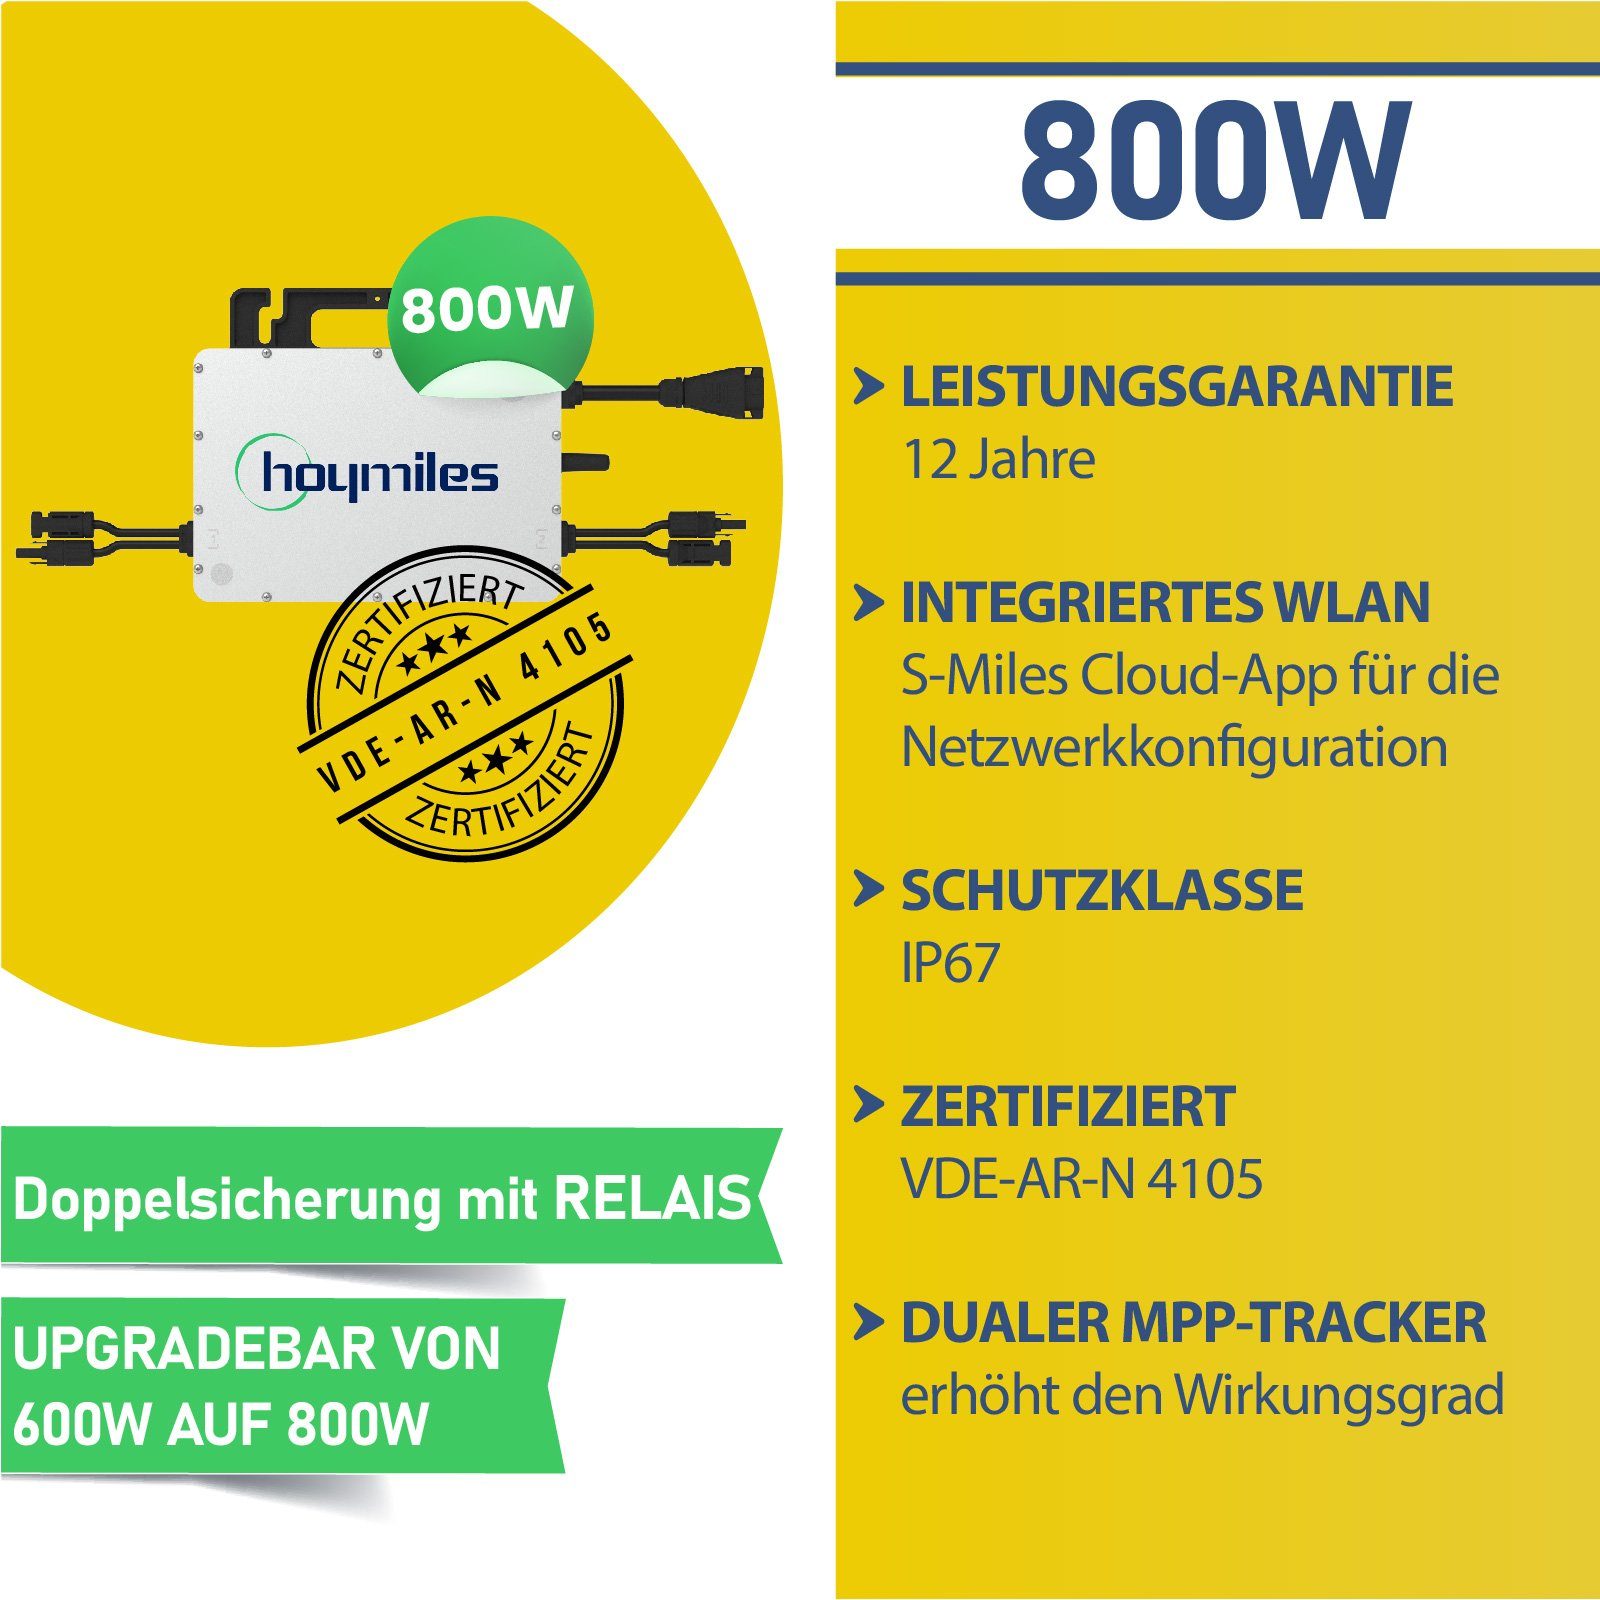 Wechselrichter) Bifaziale Solarmodule Premium Süd Light(Klein), Aufständerung 860W Solaranlage Balkonkraftwerk (PV-Montage, Stegpearl mit Upgradefähiger HMS-800-2T WIFI